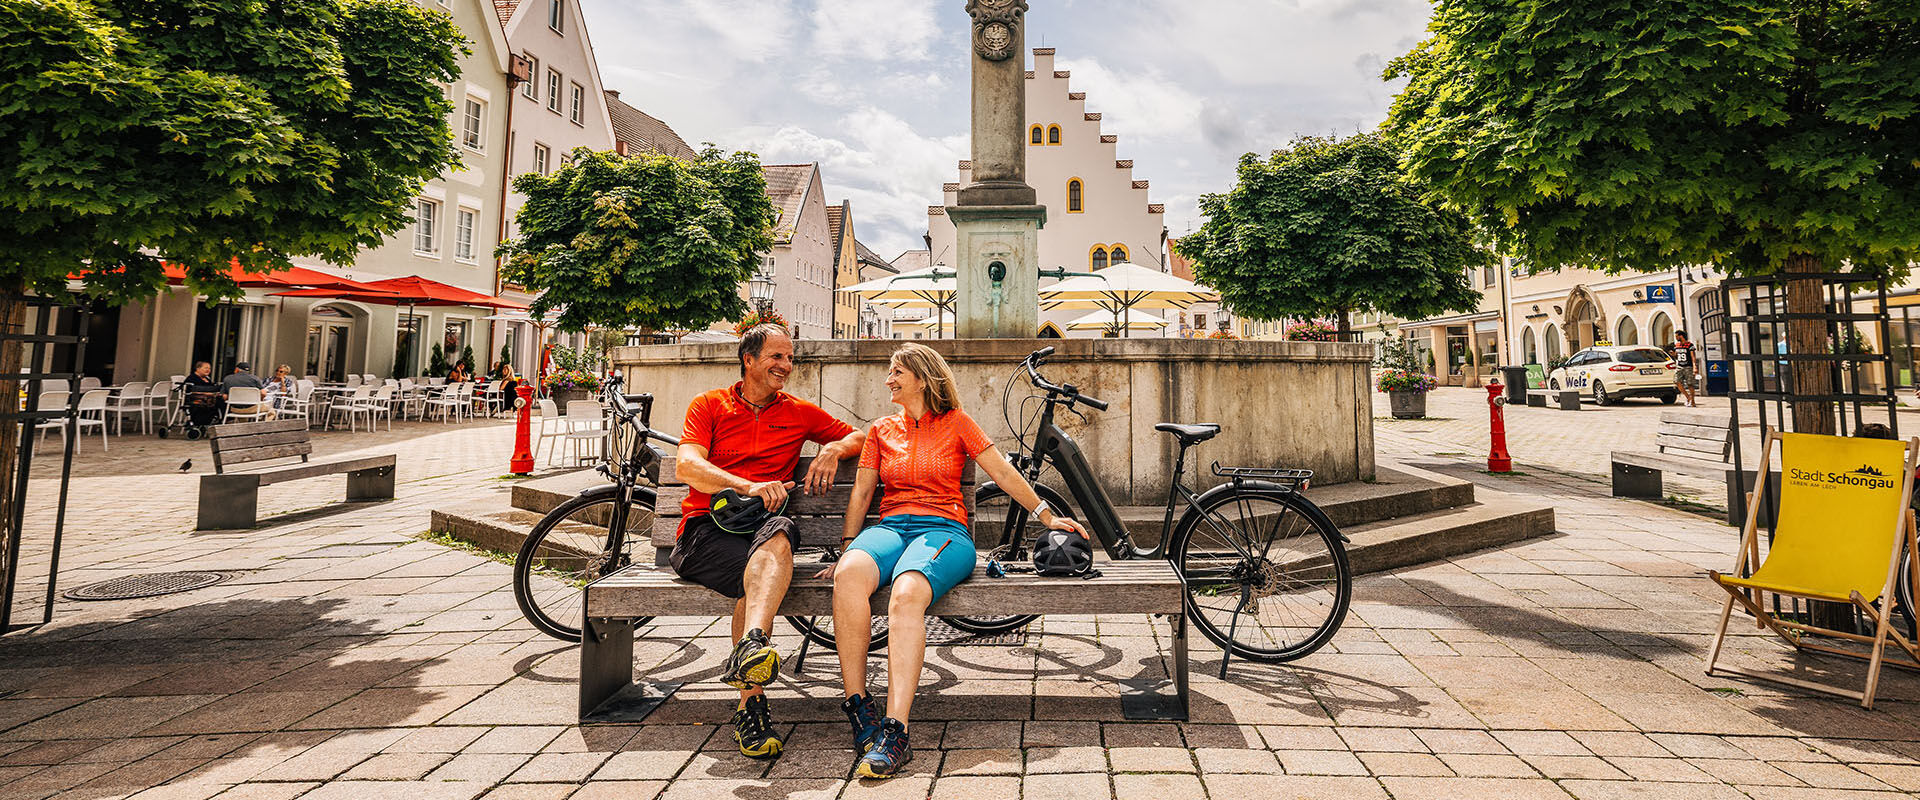 Vertrekpunt München: drie fietstochten over de waterfietsroutes van Opper-Beieren